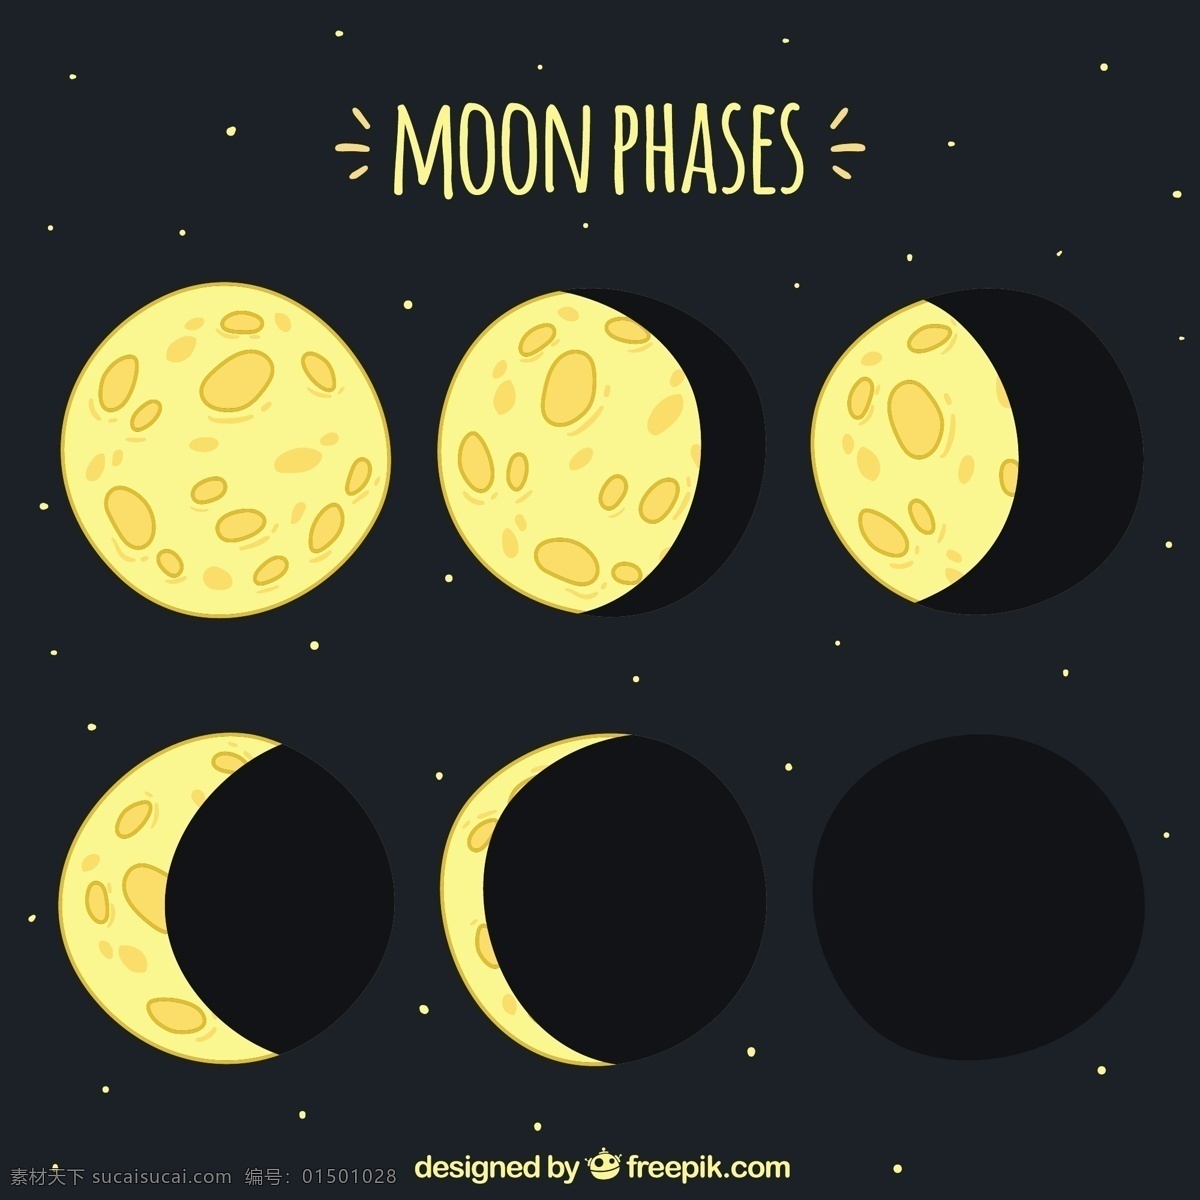 手绘月相 日历 一方面 手绘 天空 月亮 数量 时间 晚上 计划 策划 夜空 宇宙 年 季 绘制 占星术 月 满月 周计划